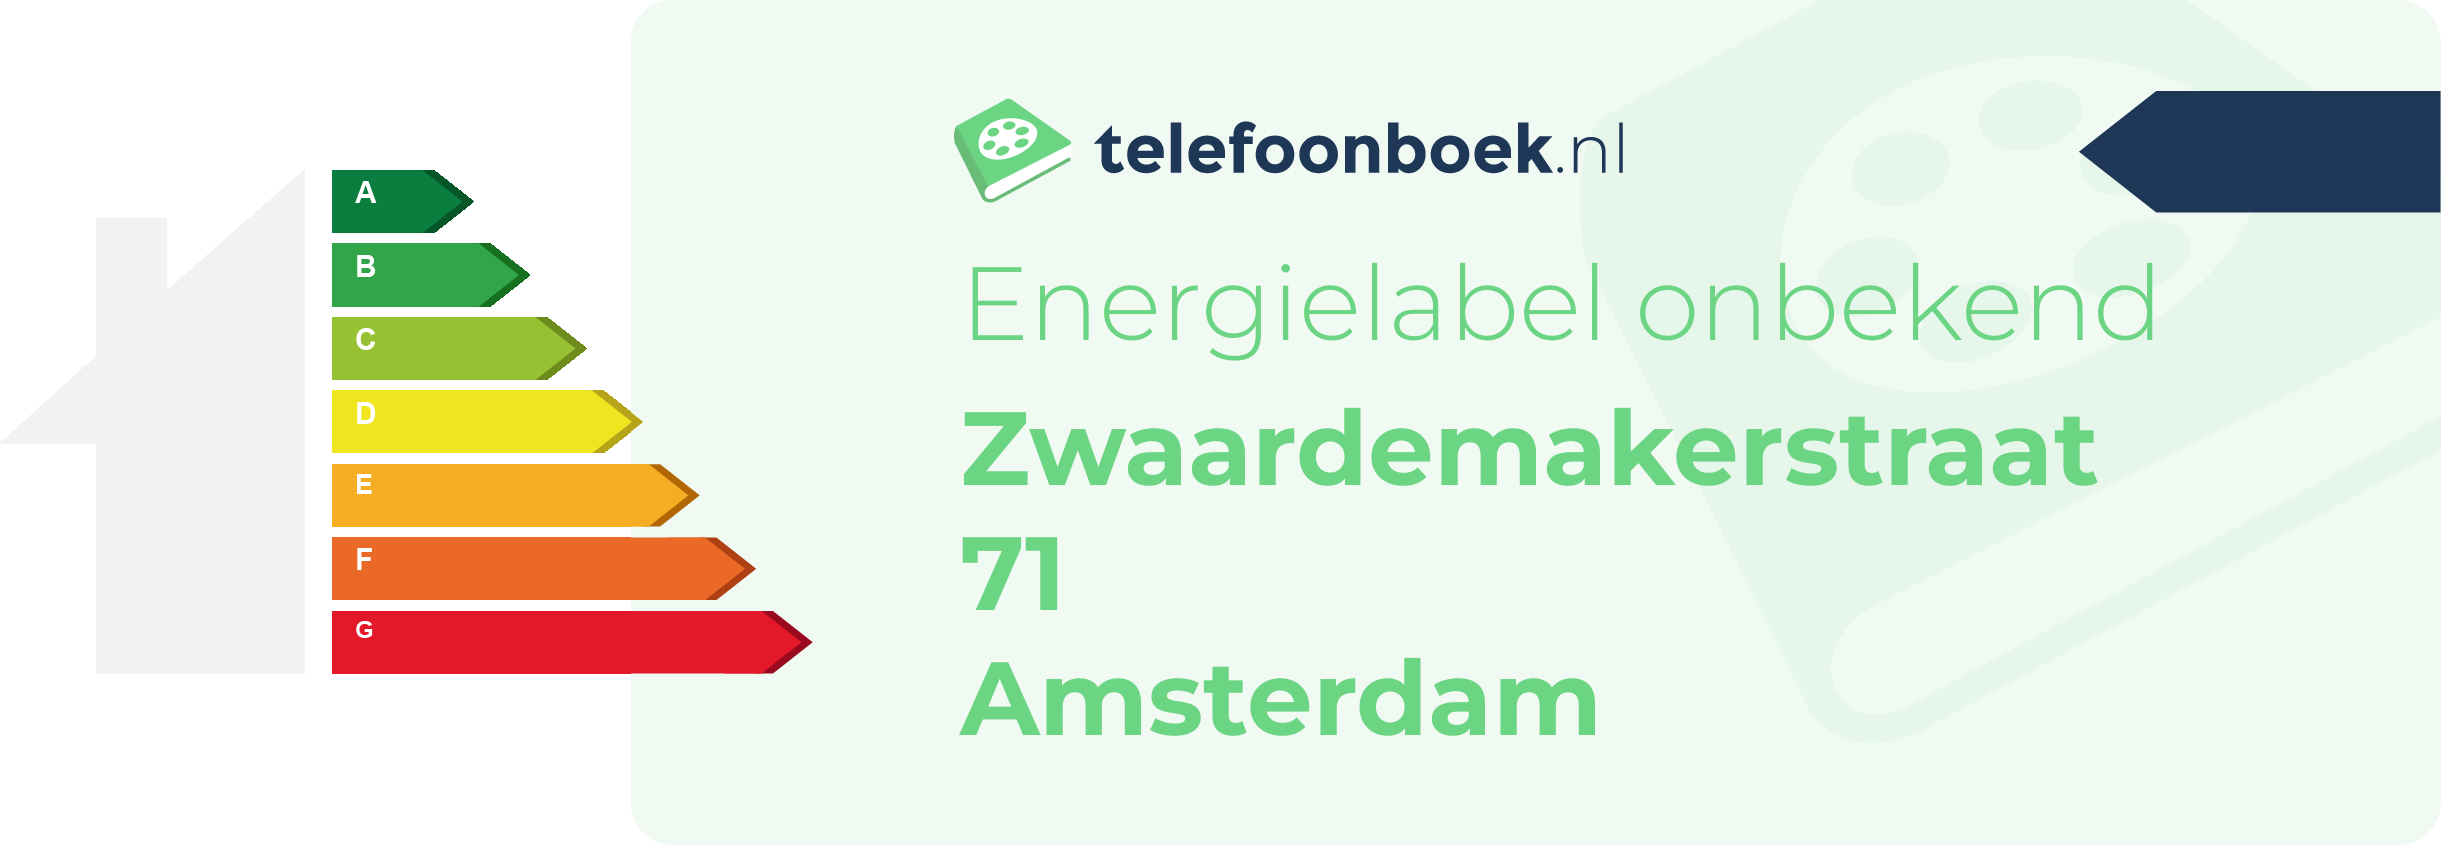 Energielabel Zwaardemakerstraat 71 Amsterdam